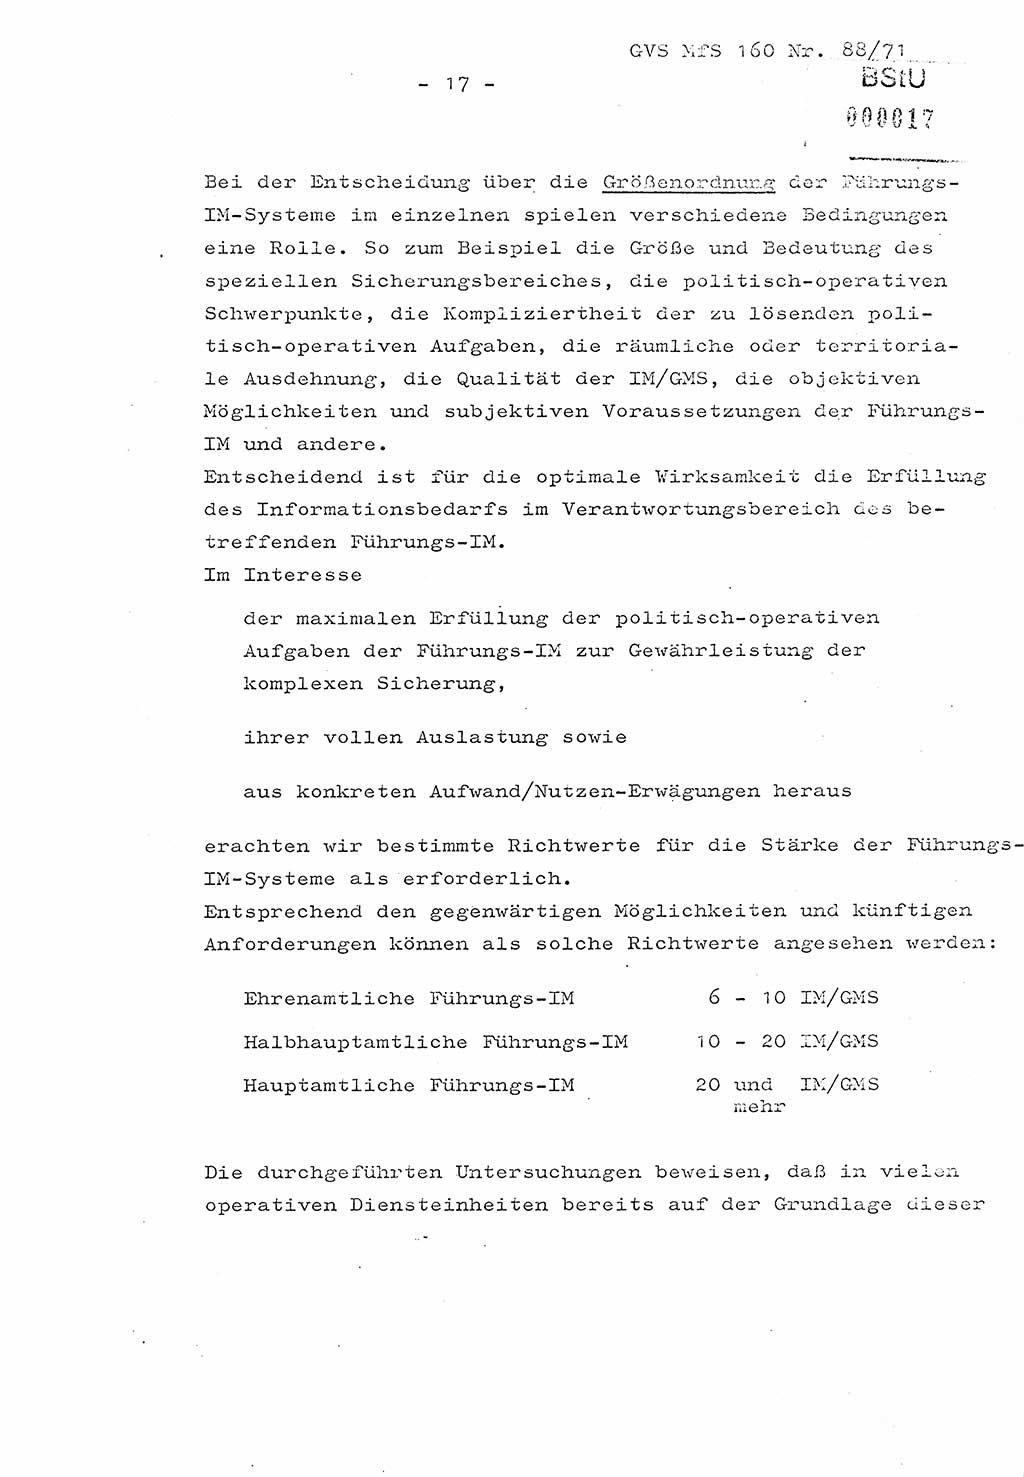 Dissertation Oberstleutnant Josef Schwarz (BV Schwerin), Major Fritz Amm (JHS), Hauptmann Peter Gräßler (JHS), Ministerium für Staatssicherheit (MfS) [Deutsche Demokratische Republik (DDR)], Juristische Hochschule (JHS), Geheime Verschlußsache (GVS) 160-88/71, Potsdam 1972, Seite 17 (Diss. MfS DDR JHS GVS 160-88/71 1972, S. 17)